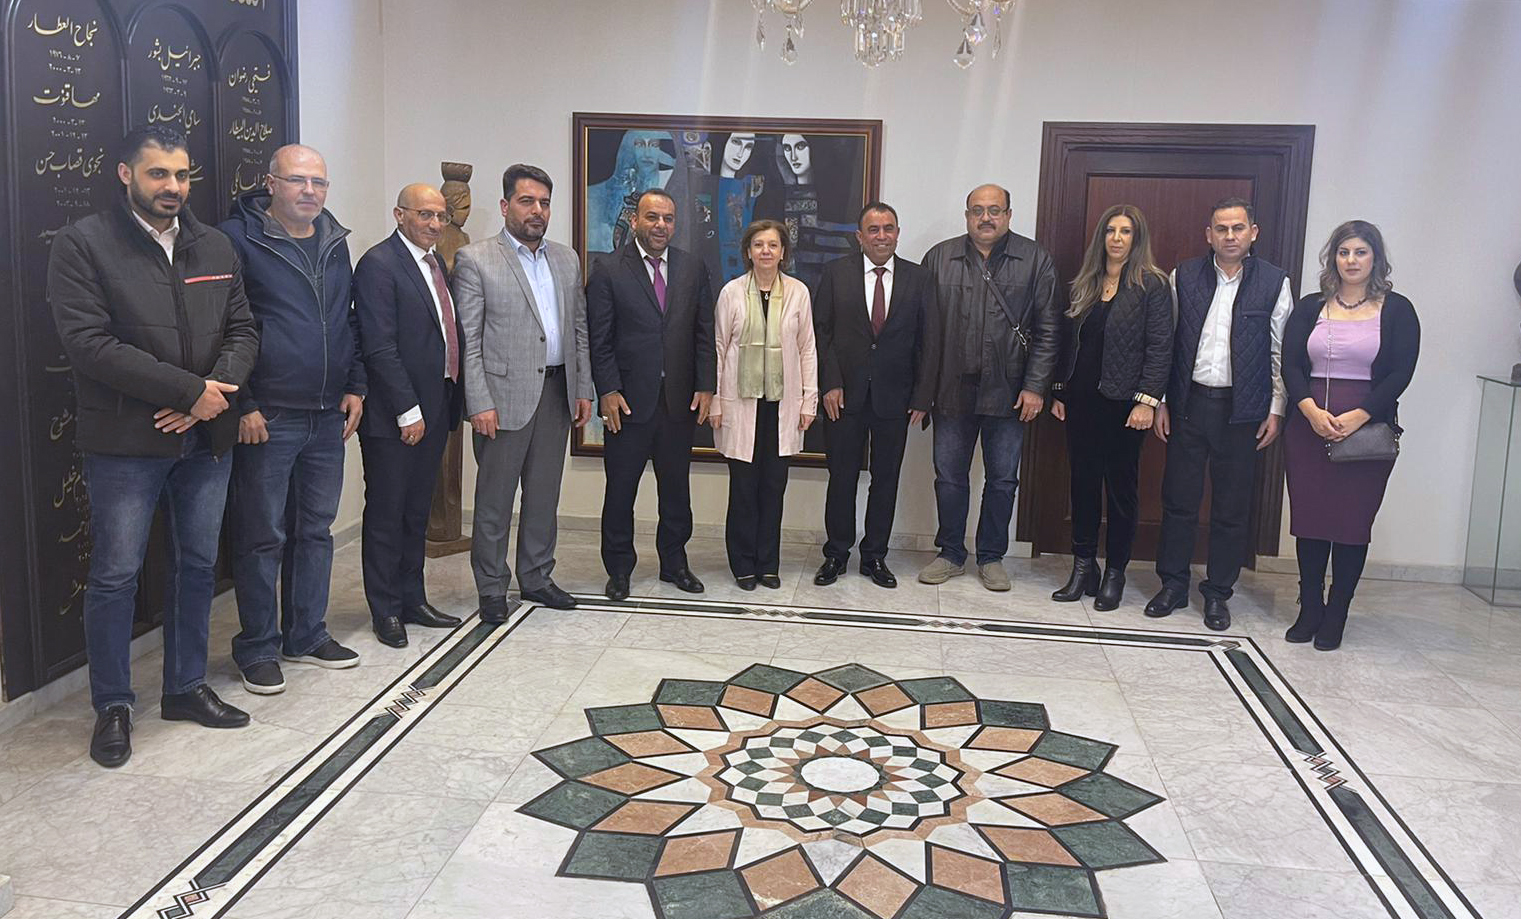 الجامعة العربية الأمريكية في زيارة للجمهورية العربية السورية